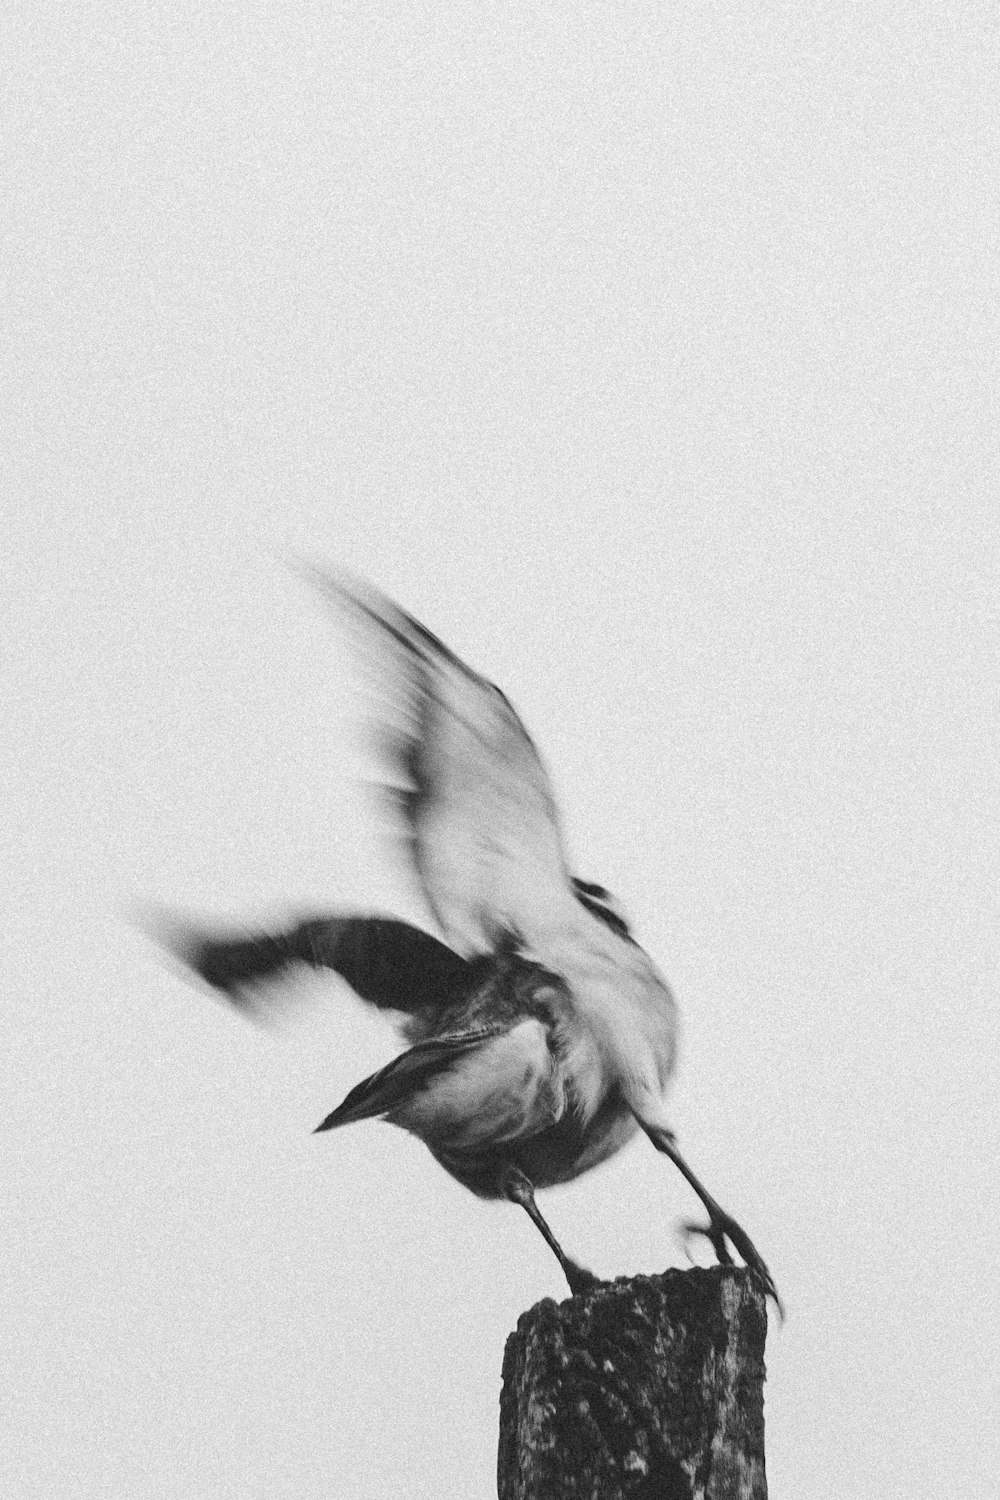 fotografia in scala di grigi dell'uccello